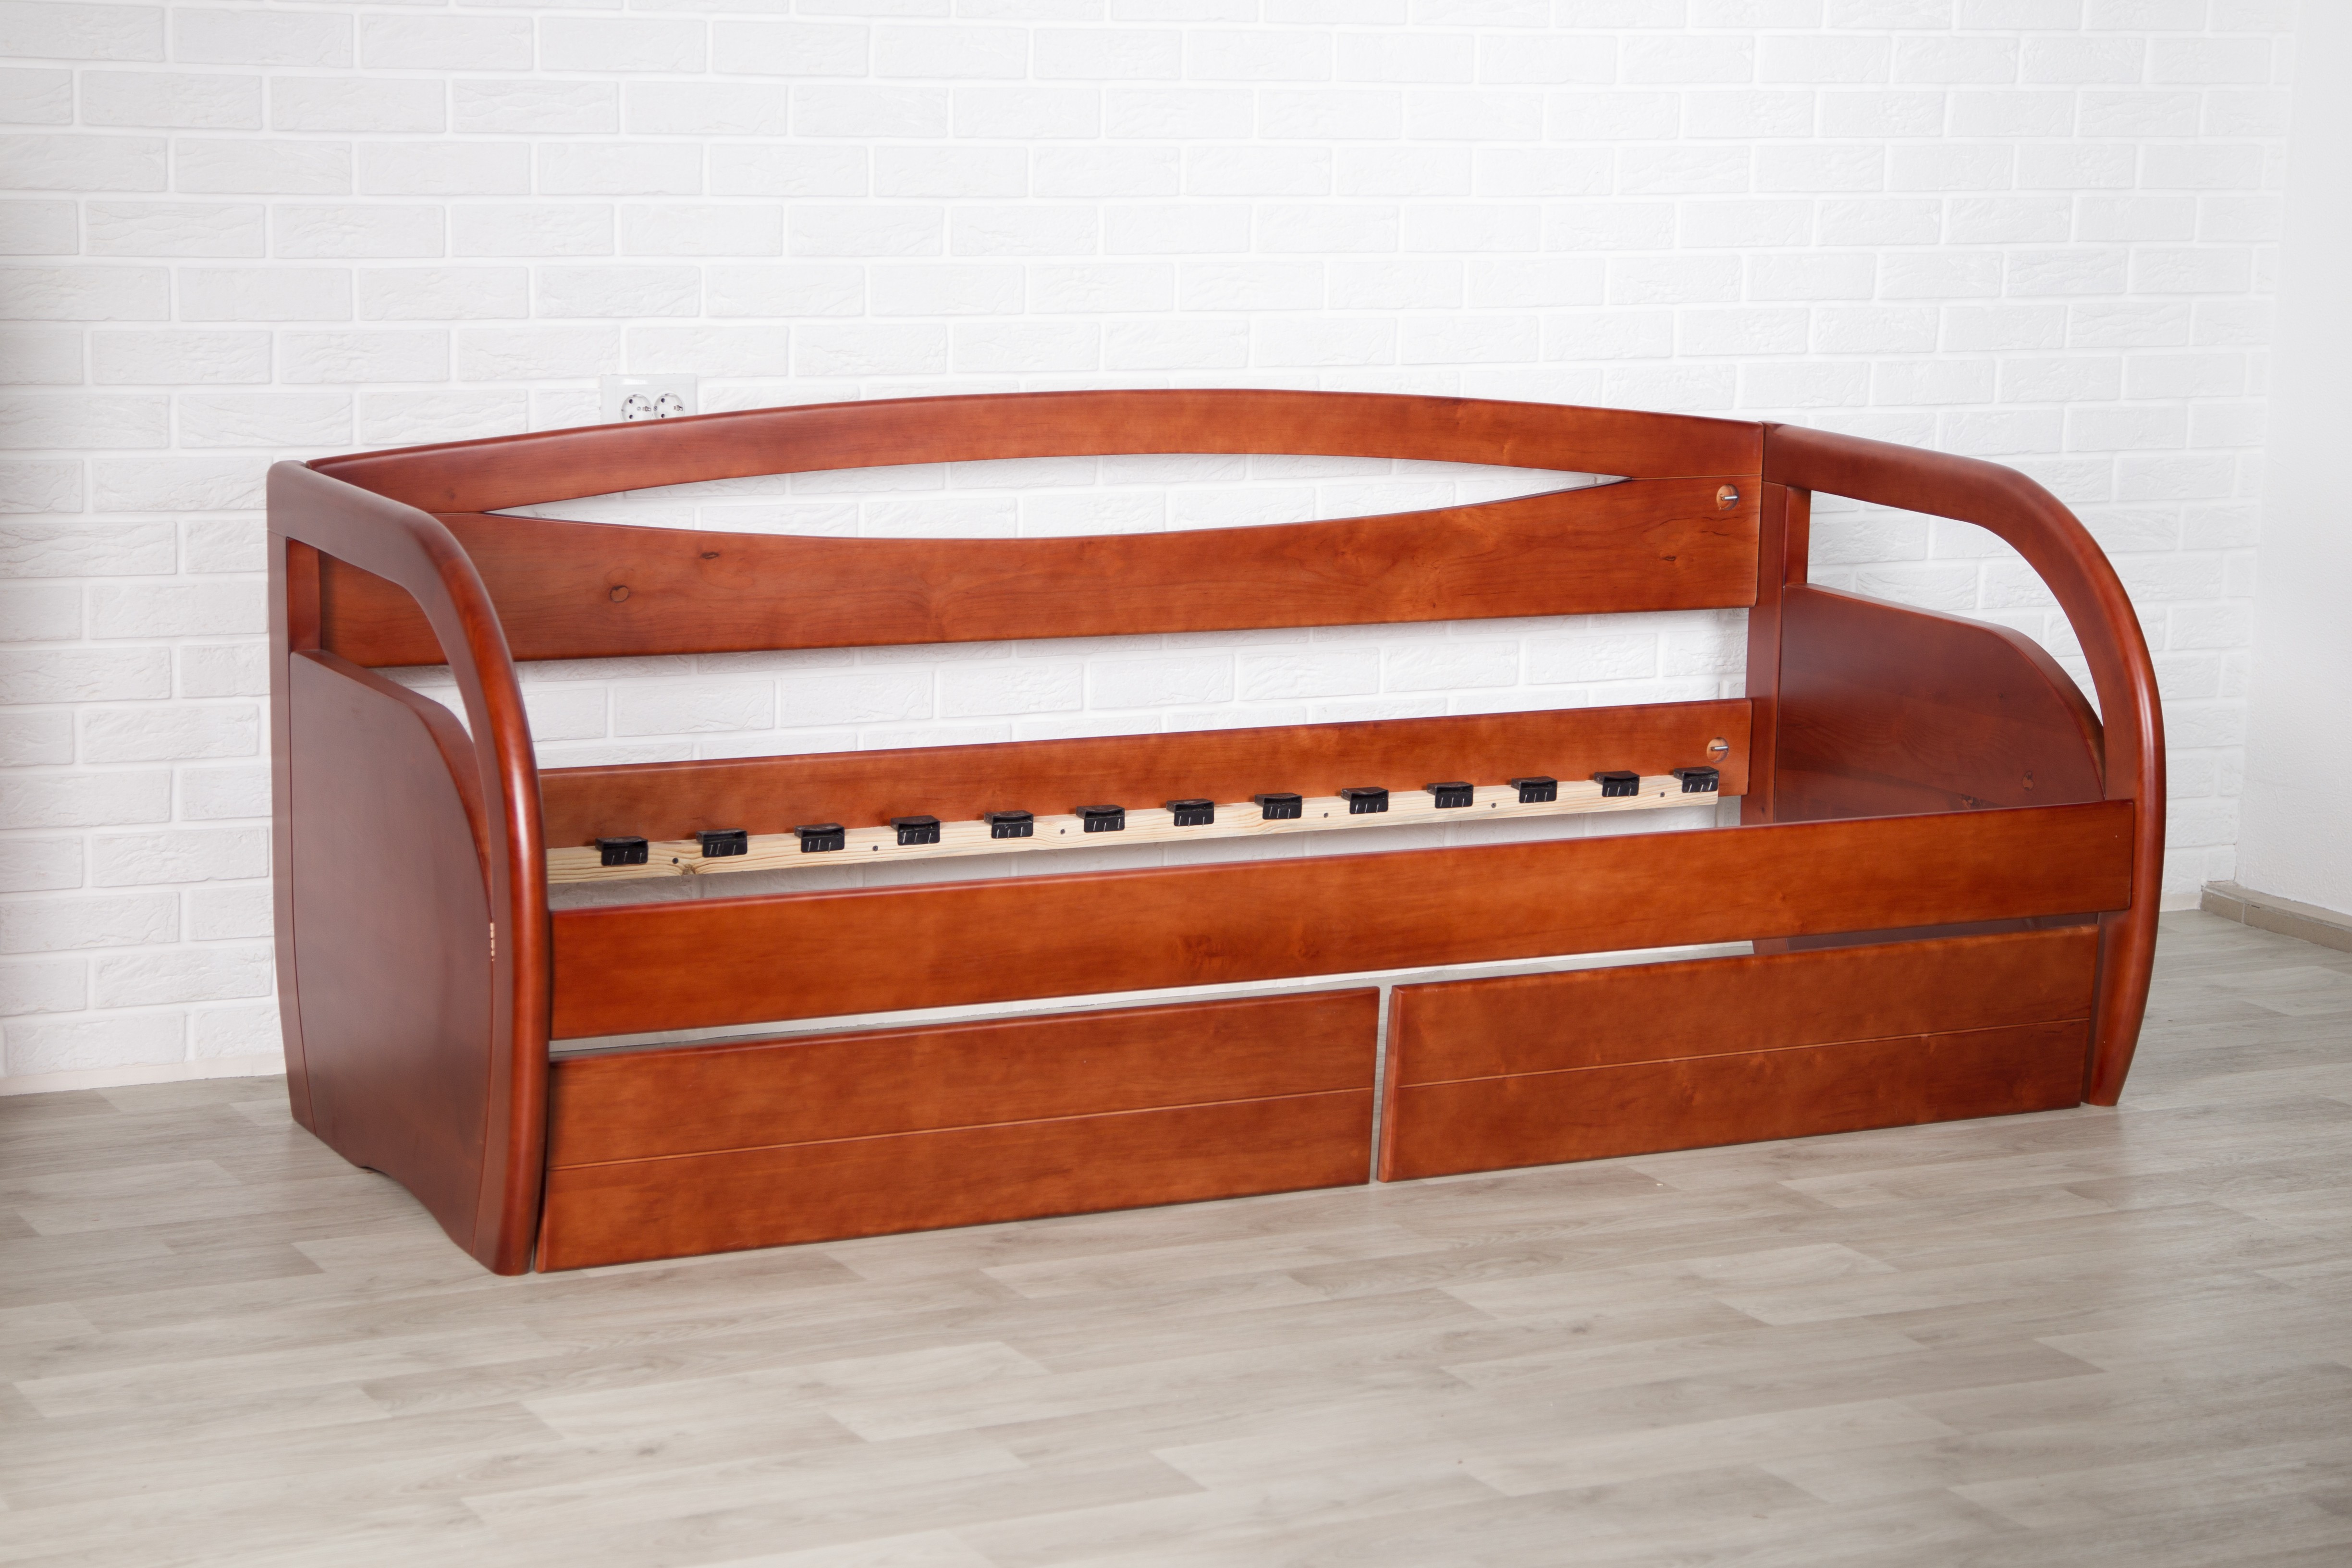 Деревянная кровать Бавария с ящиками 80*200